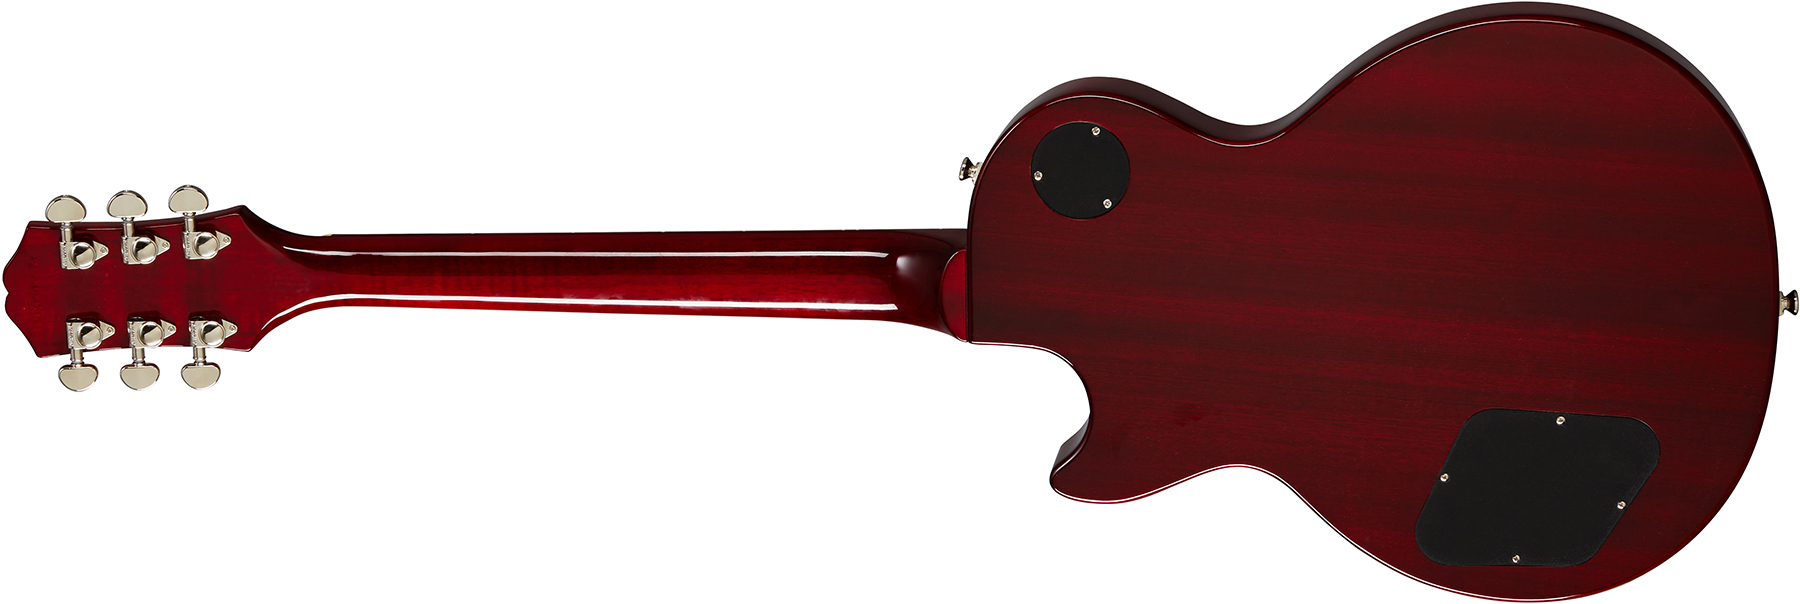 Epiphone Les Paul Studio 2h Ht Pf - Wine Red - Enkel gesneden elektrische gitaar - Variation 1